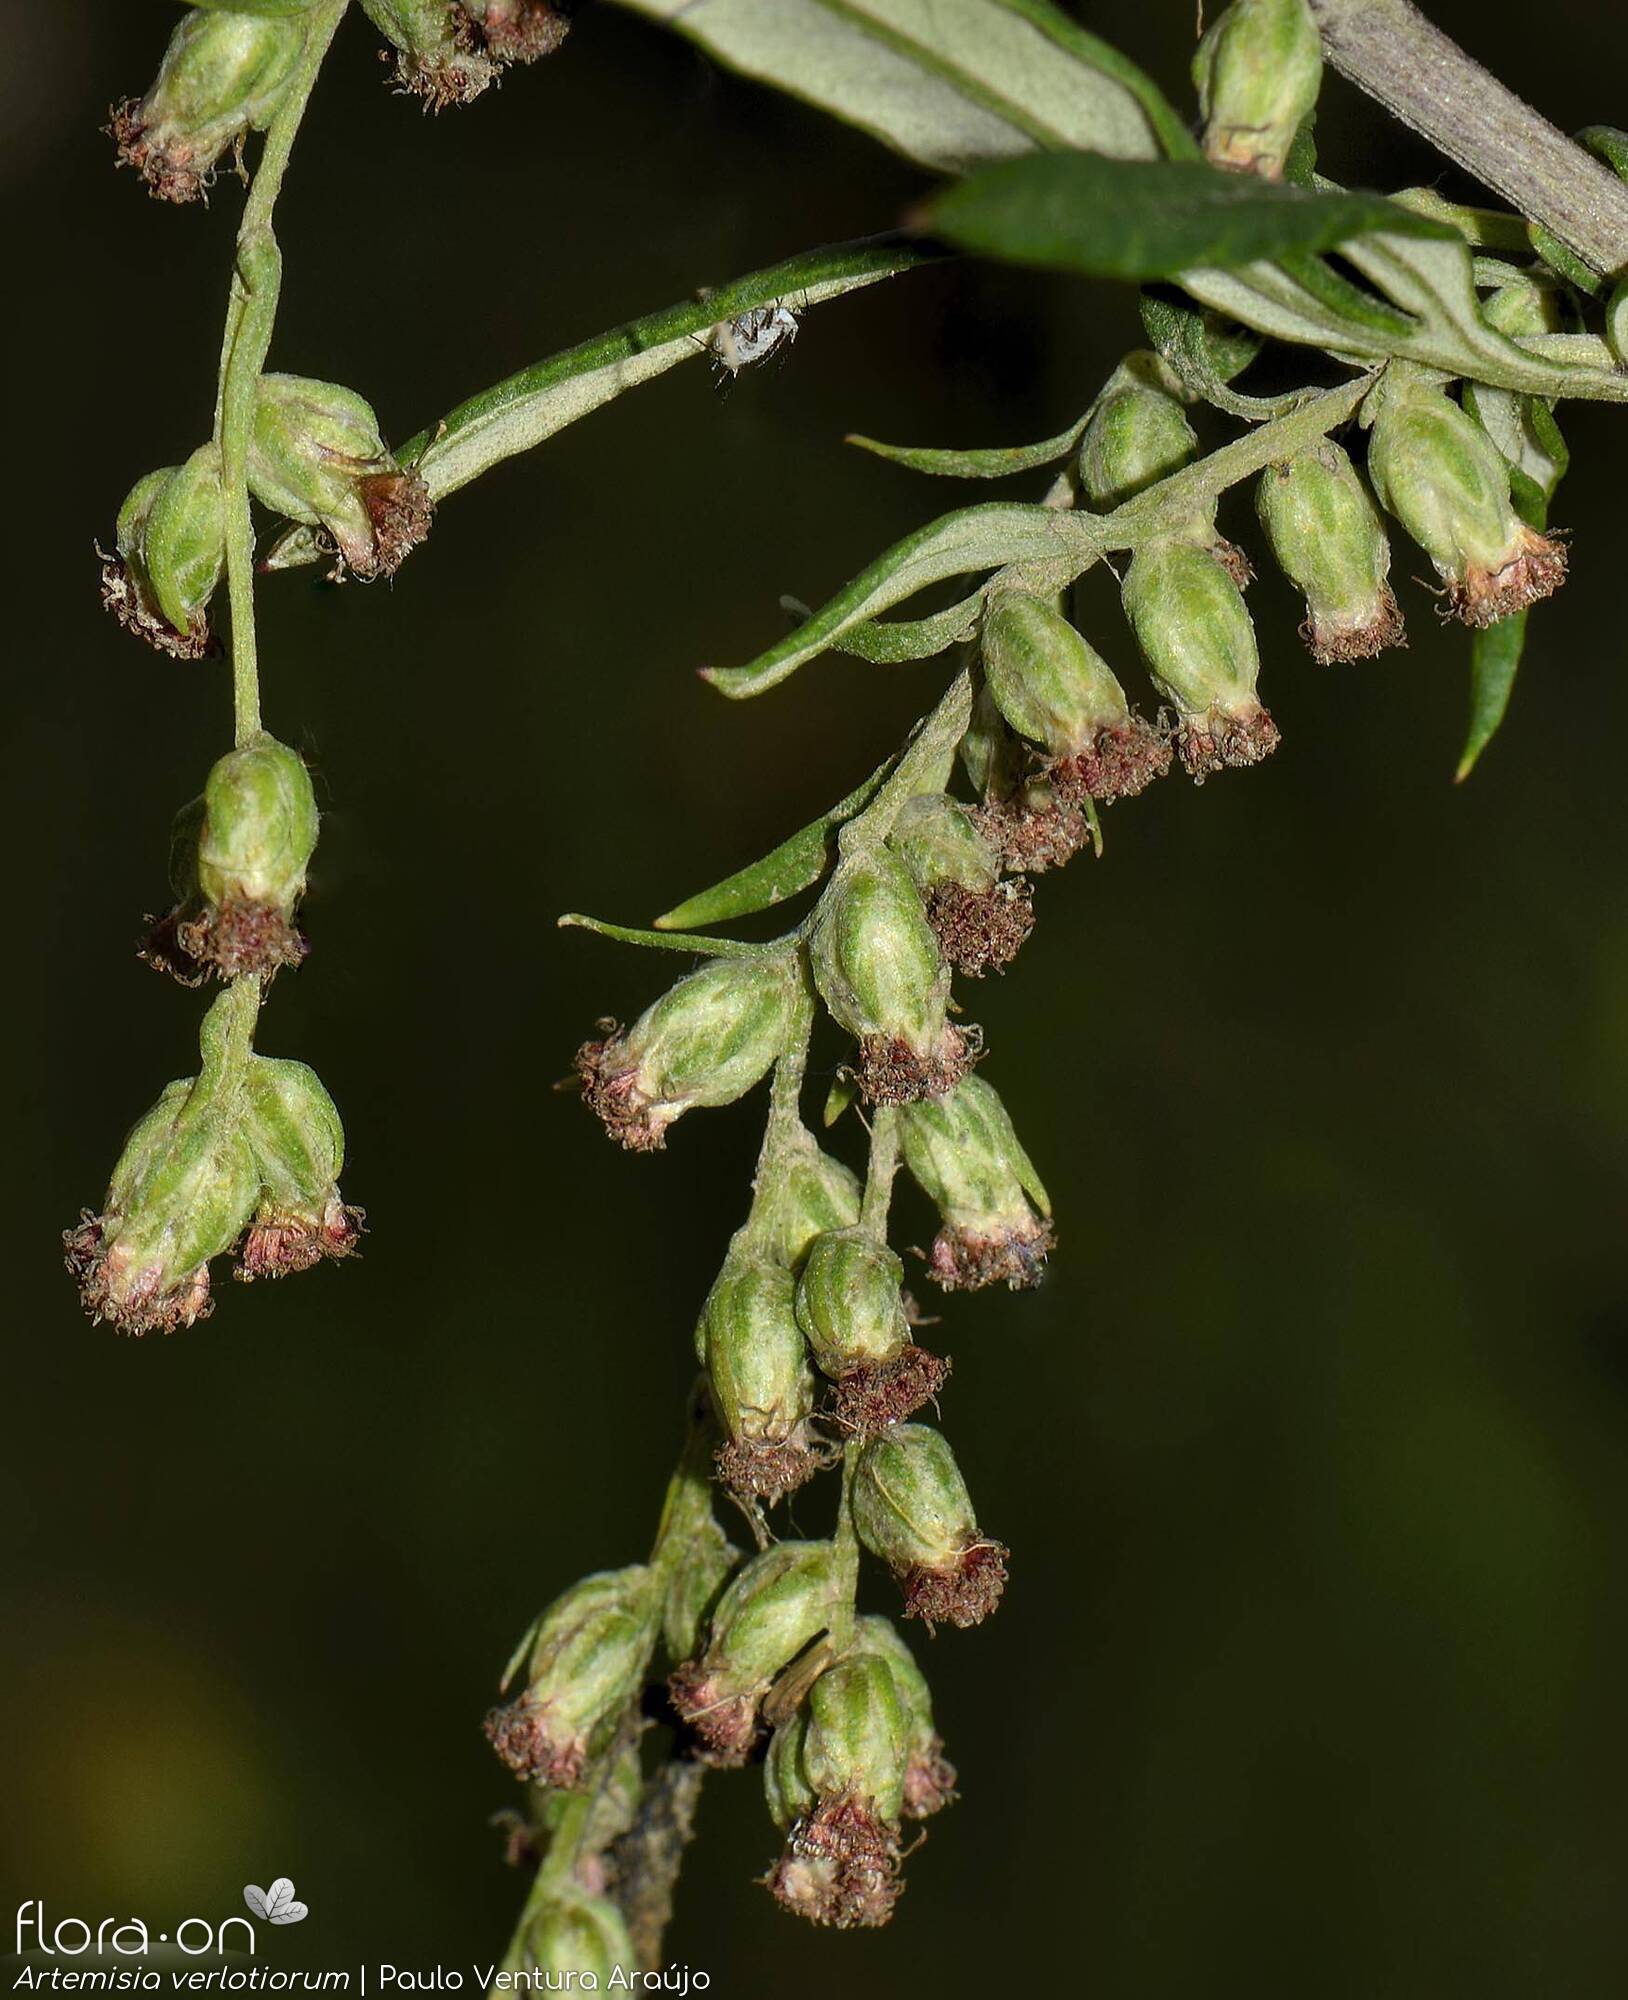 Artemisia verlotiorum - Flor (geral) | Paulo Ventura Araújo; CC BY-NC 4.0